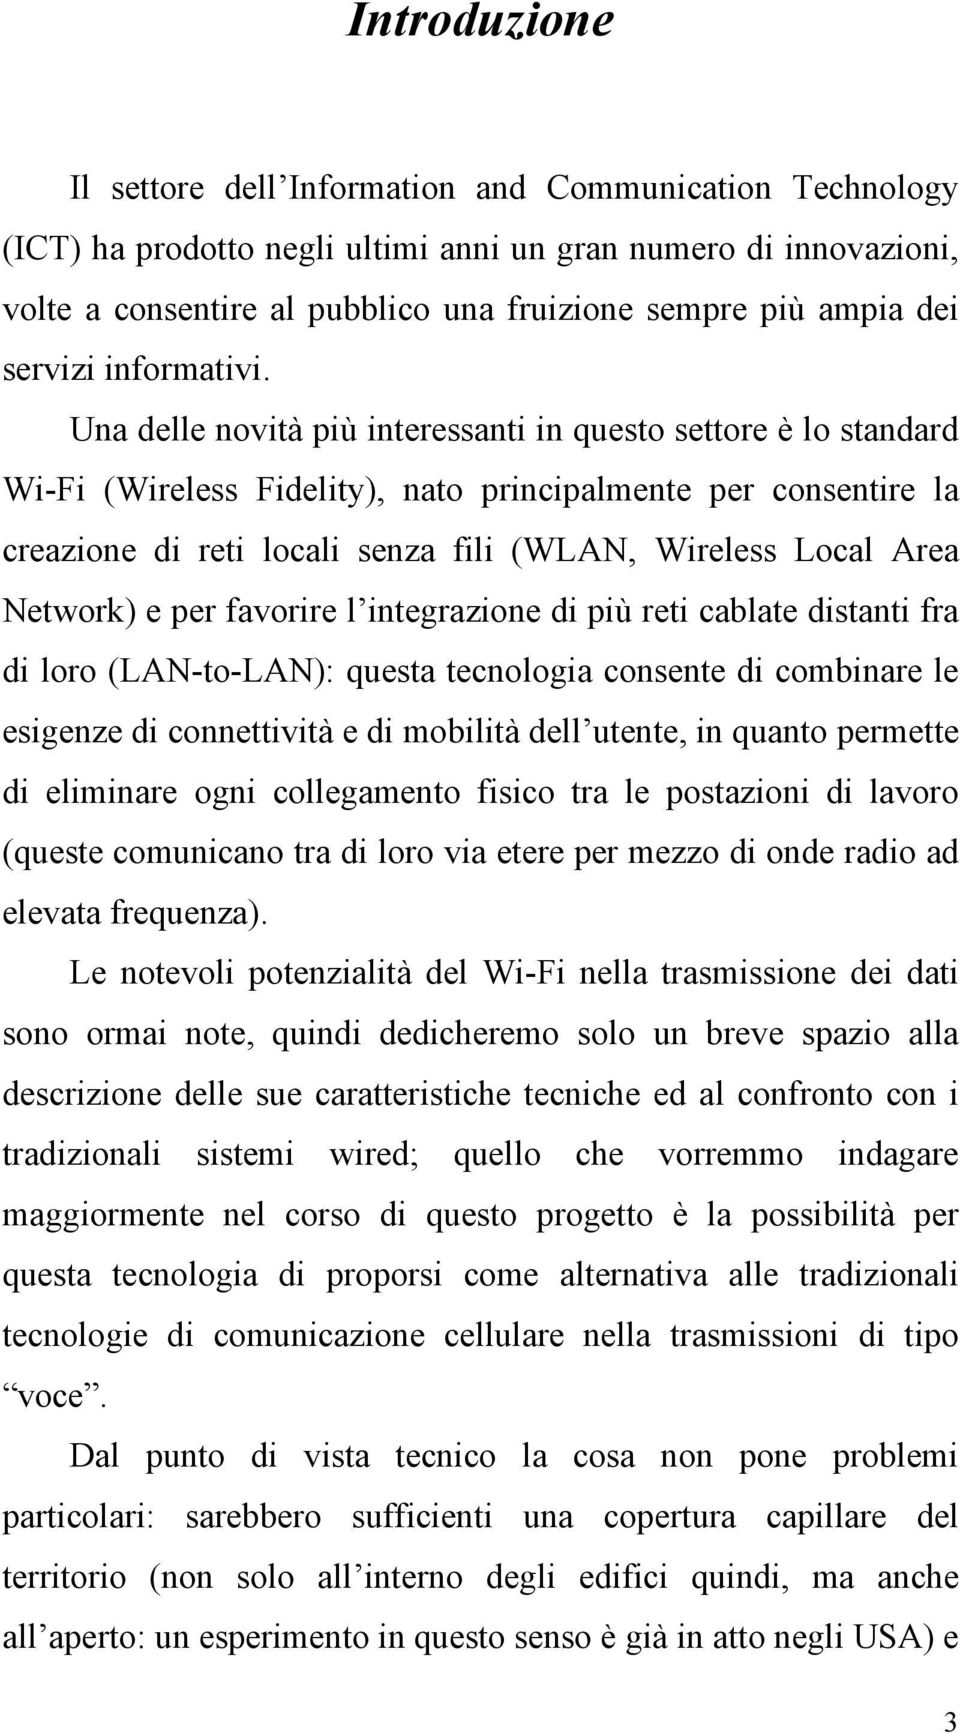 Una delle novità più interessanti in questo settore è lo standard Wi-Fi (Wireless Fidelity), nato principalmente per consentire la creazione di reti locali senza fili (WLAN, Wireless Local Area